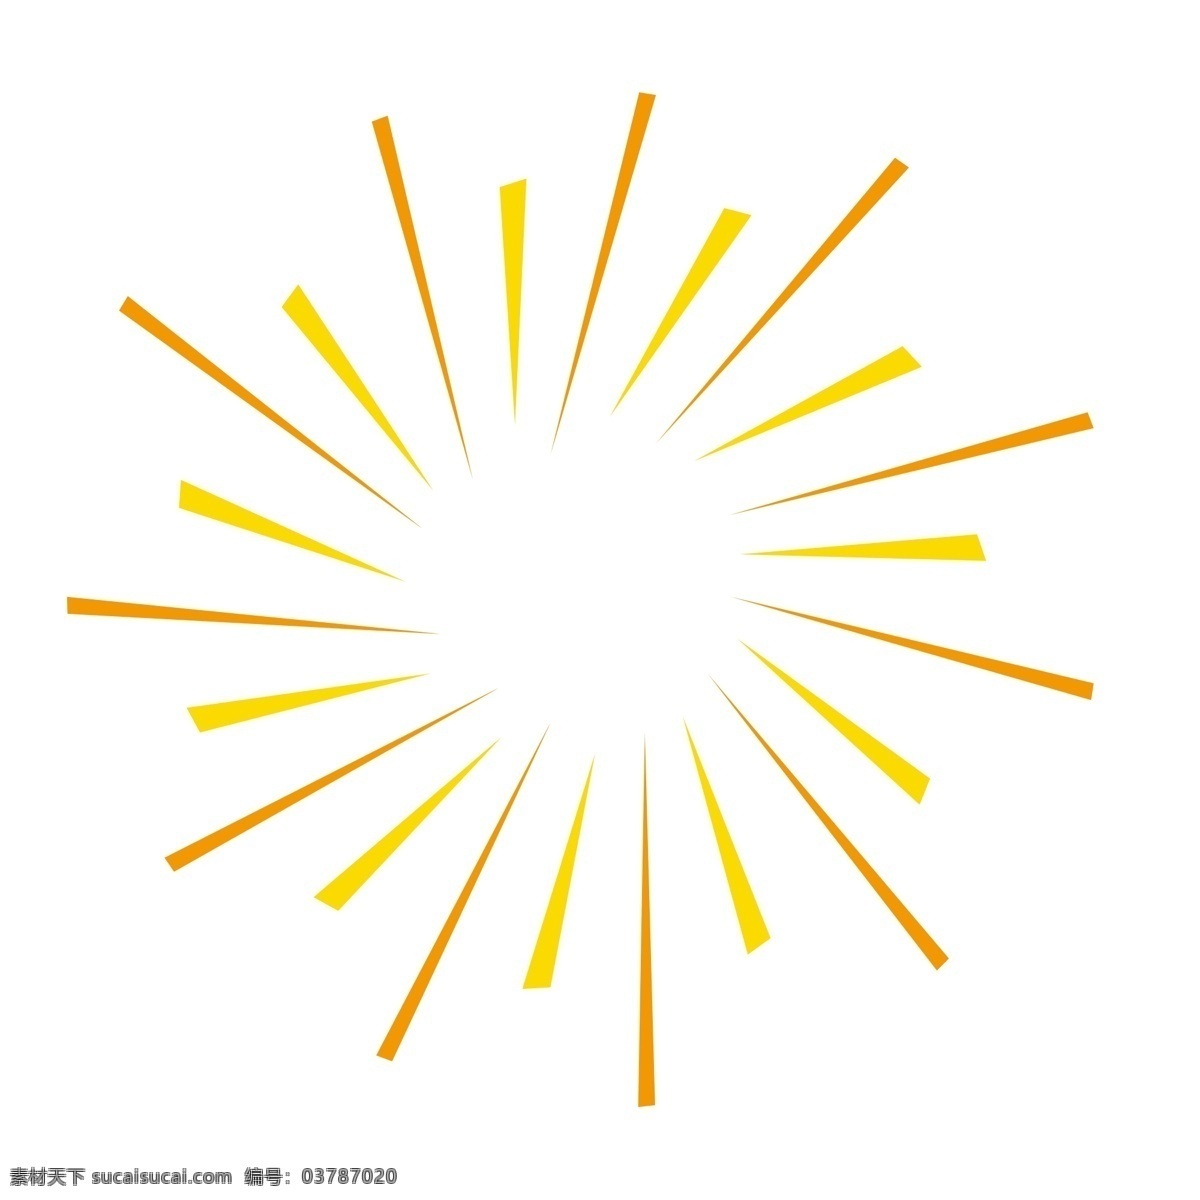 手绘 爆炸 风格 几何 边框 中国风 现在边框 黄色几何图 时尚 红黄色 促销 爆炸风格 黄色 精美几何图 简约几何形状 大气